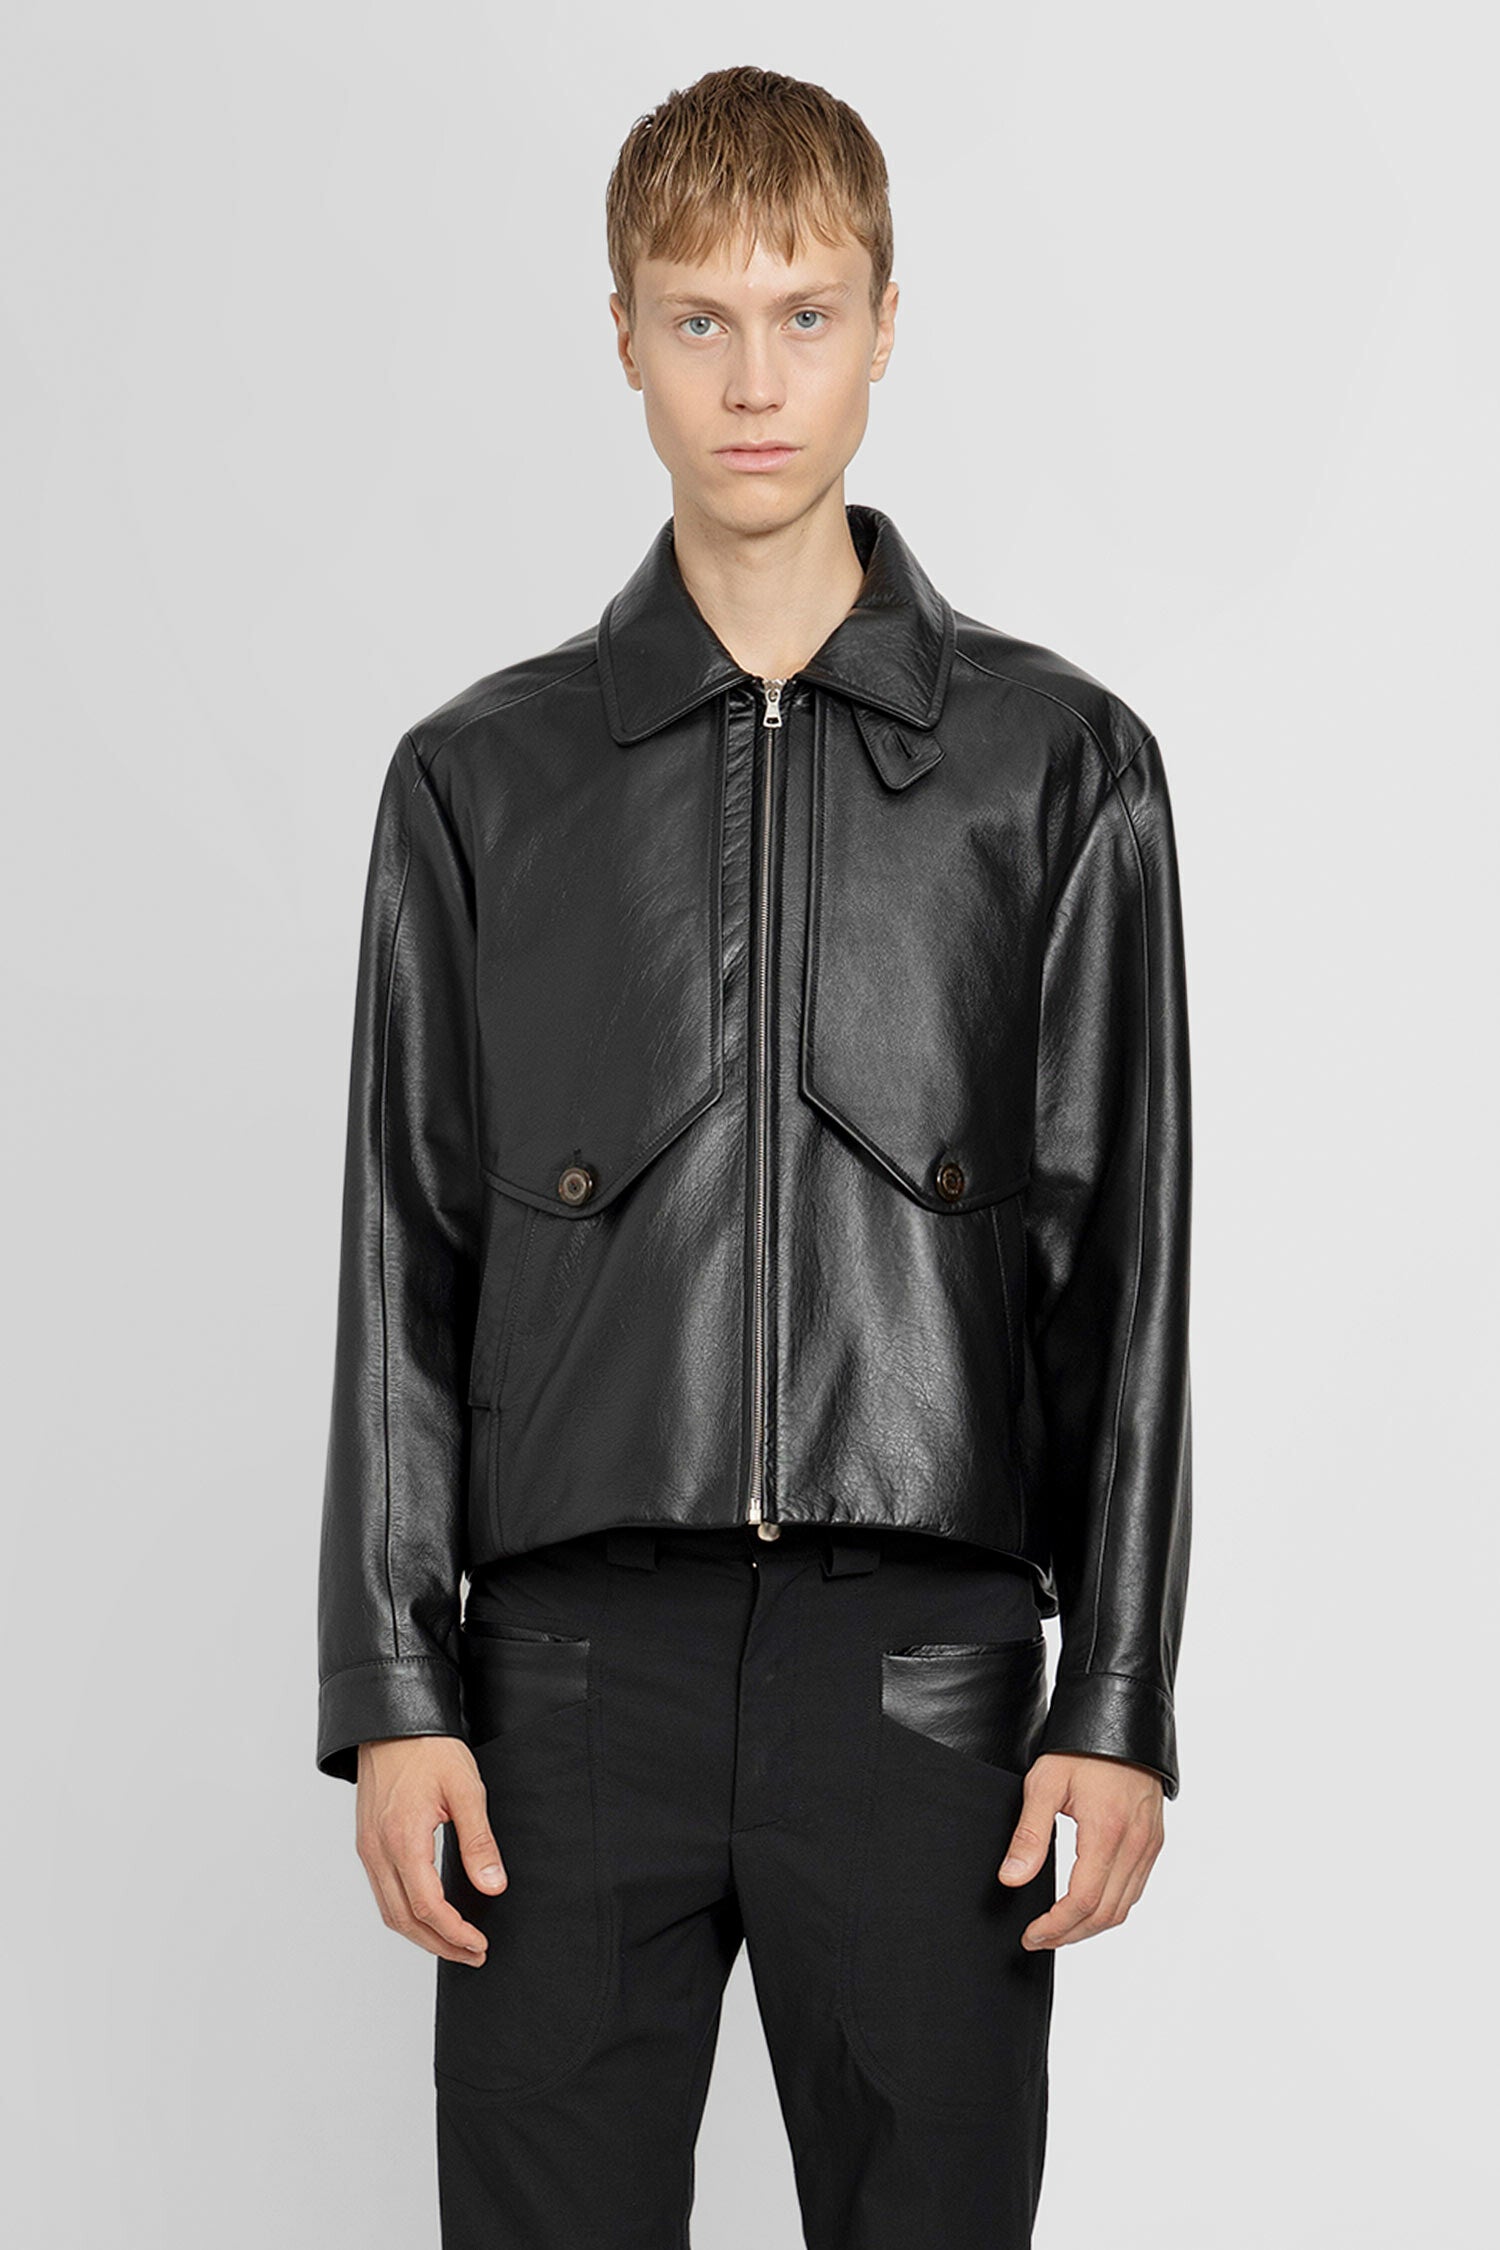 Kiko Kostadinov Man Black Leather Jackets | ModeSens